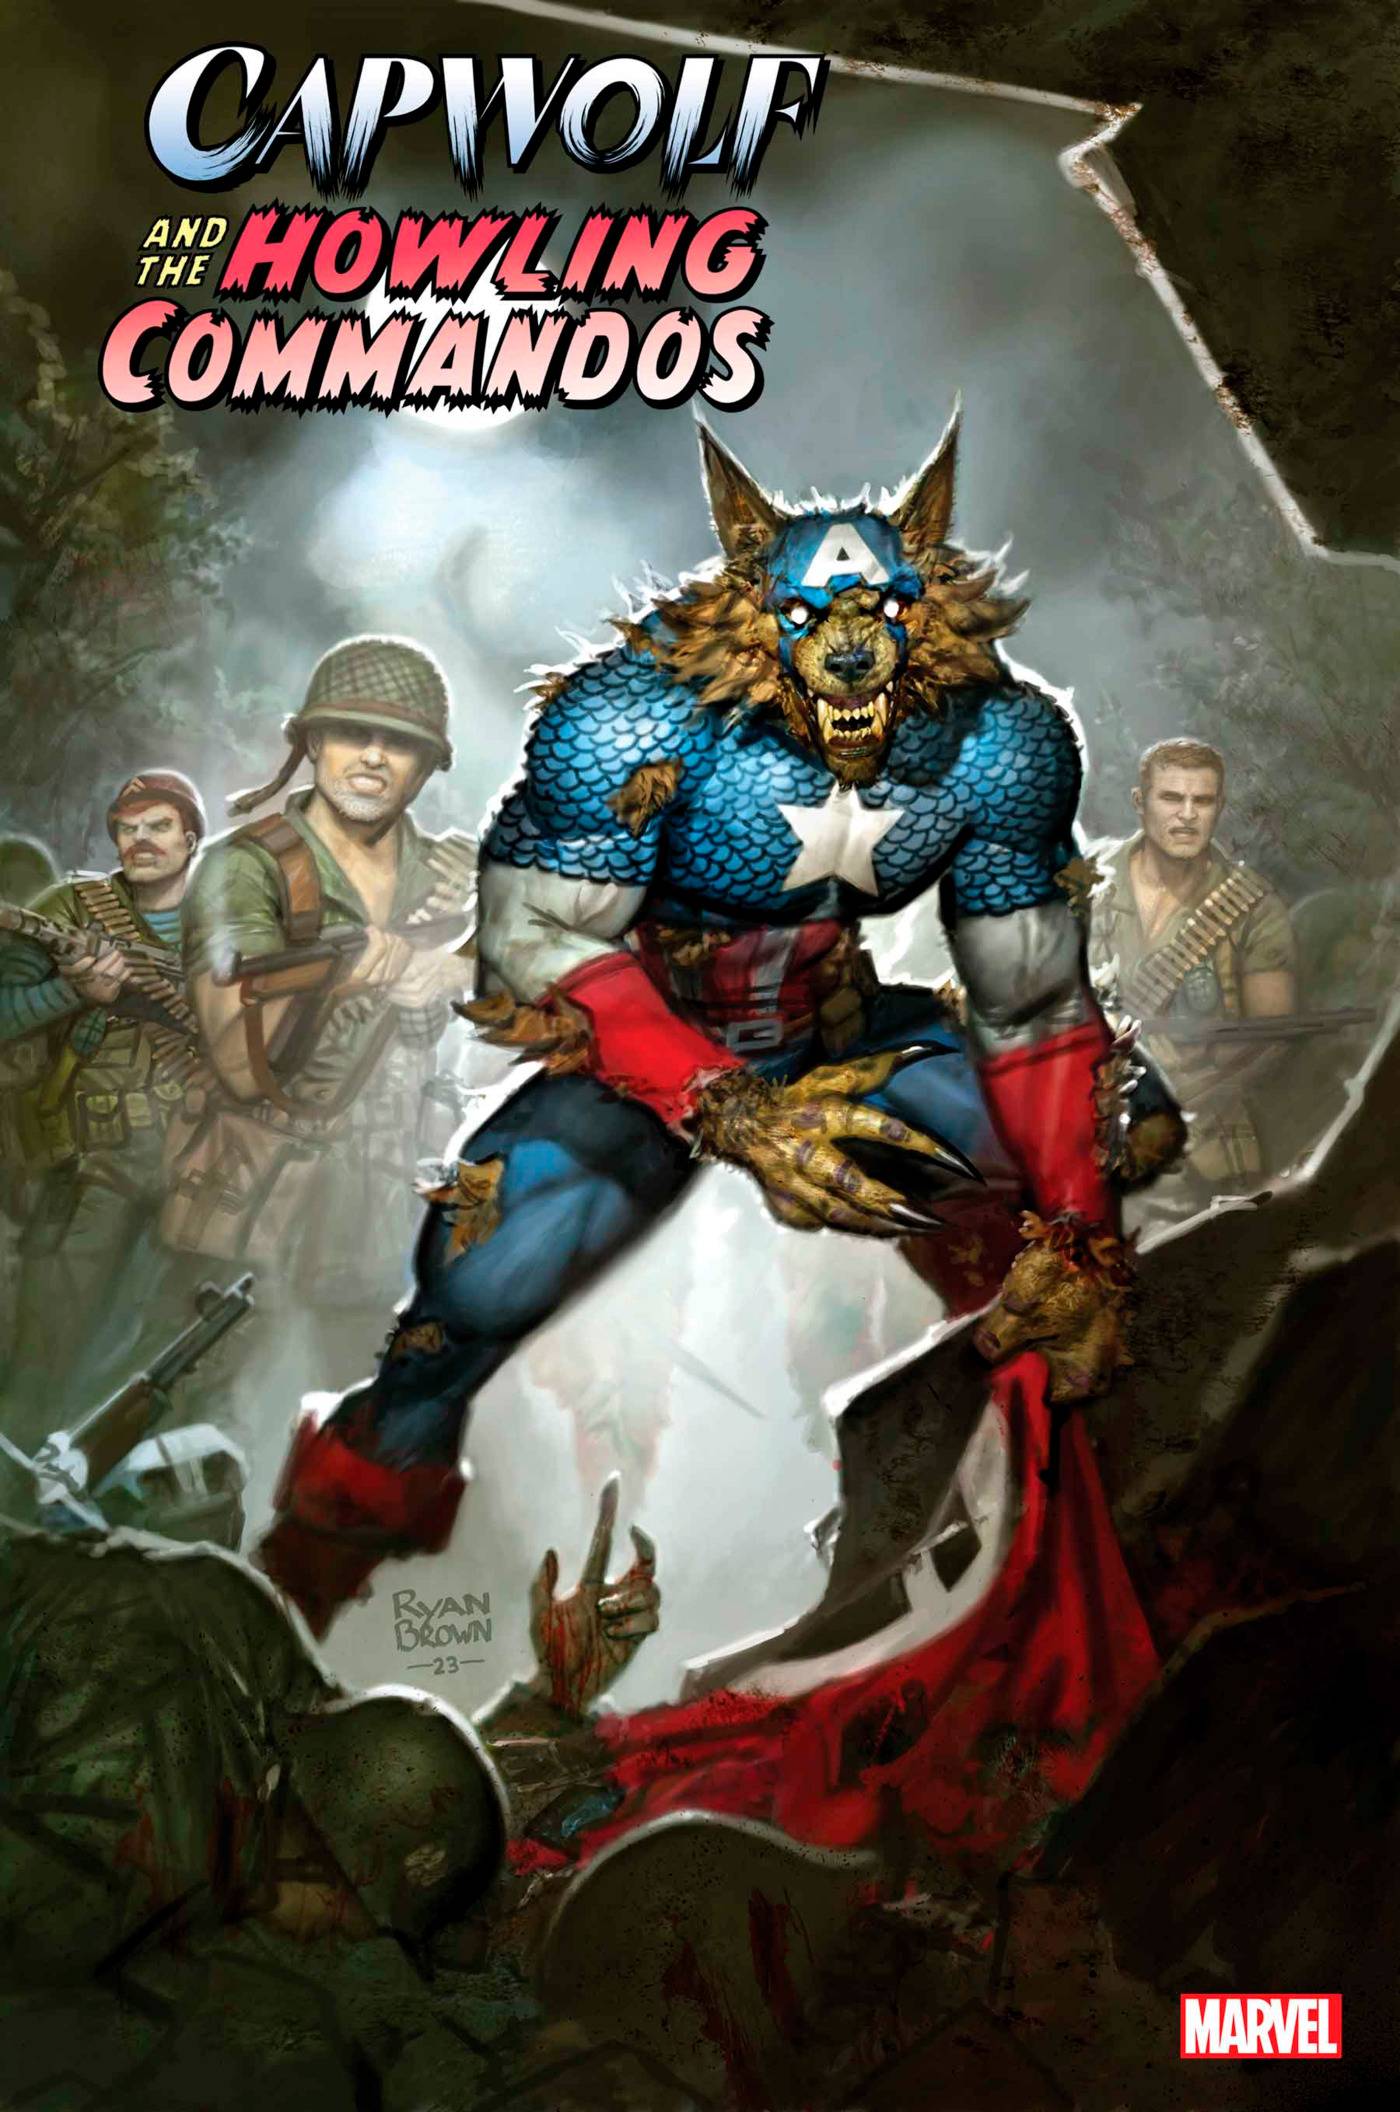 CAPWOLF HOWLING COMMANDOS #4